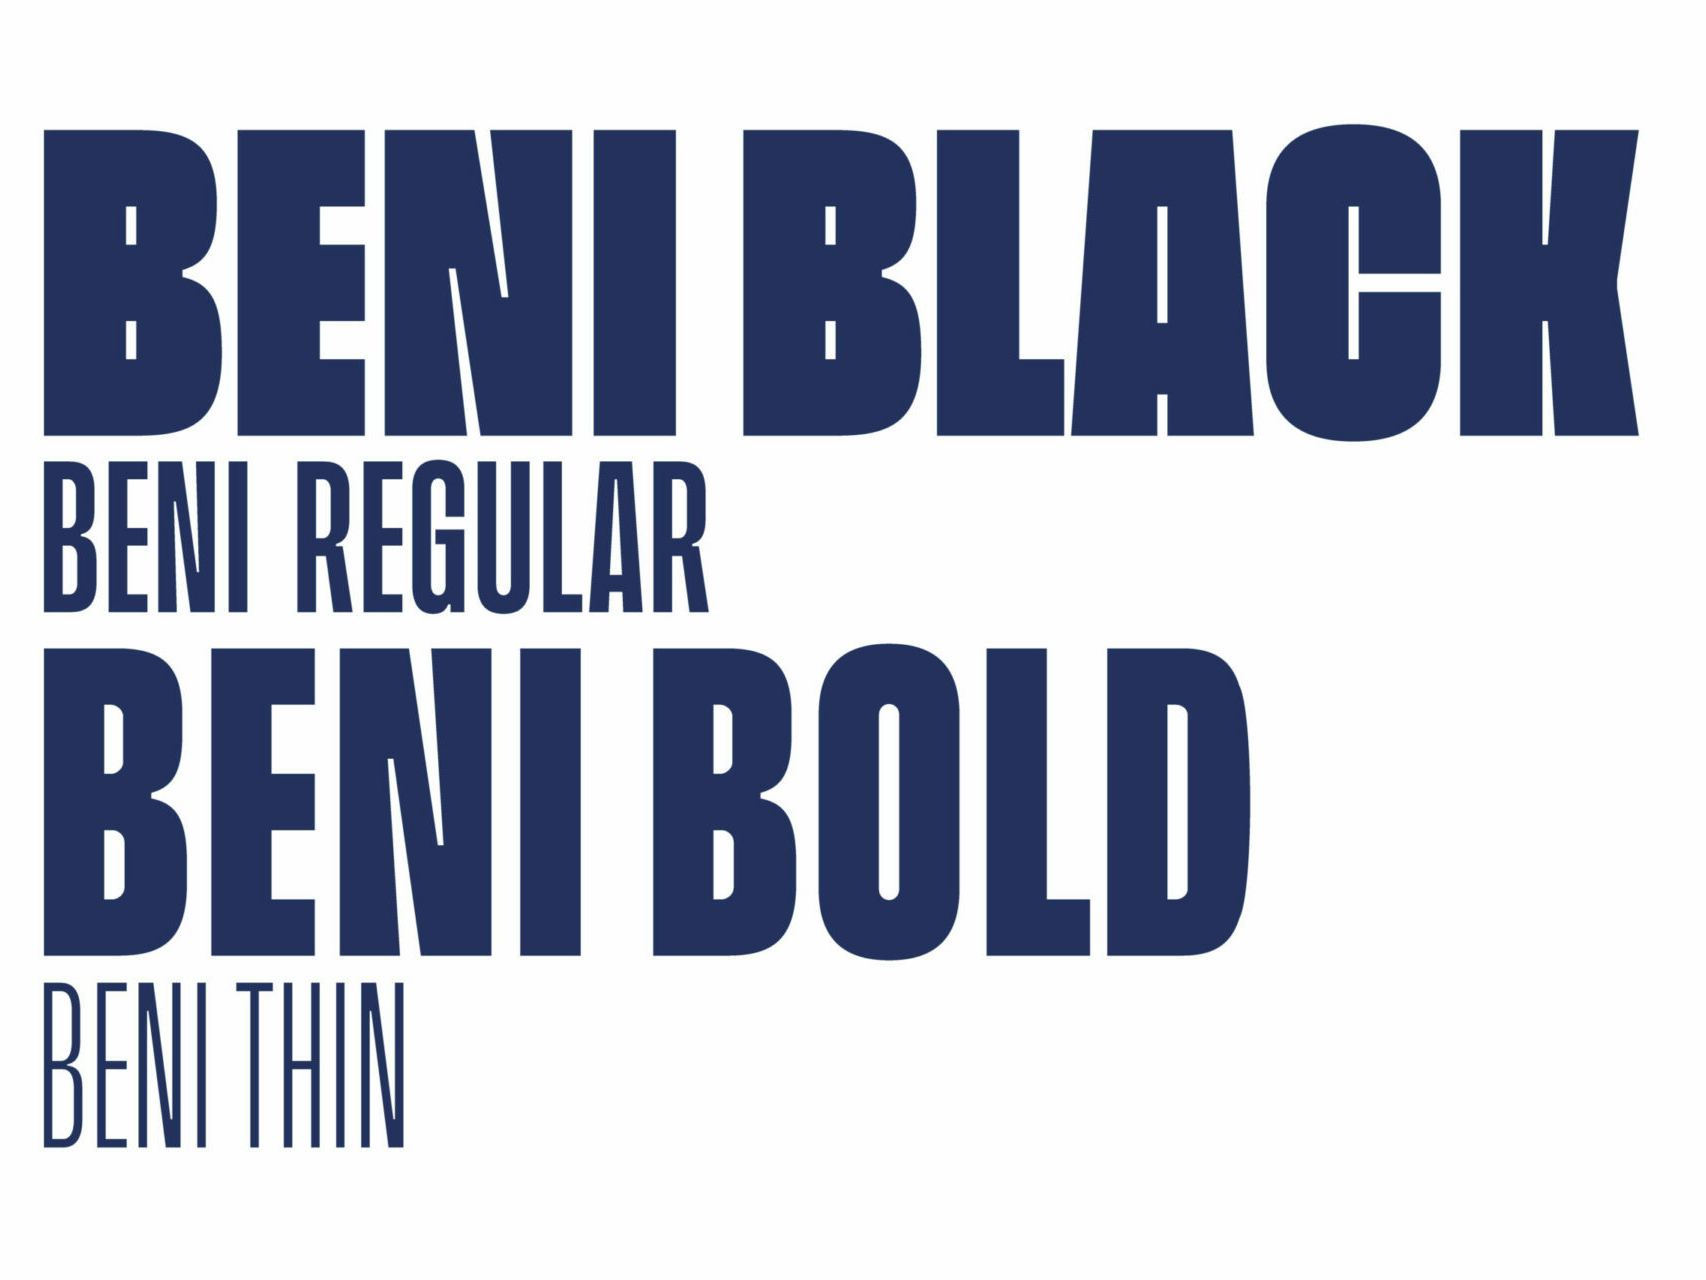 Abbildung der Schriftarten des neuen Brand Designs fuer Creators World mit Beni Black, Bold, Regular und Thin.